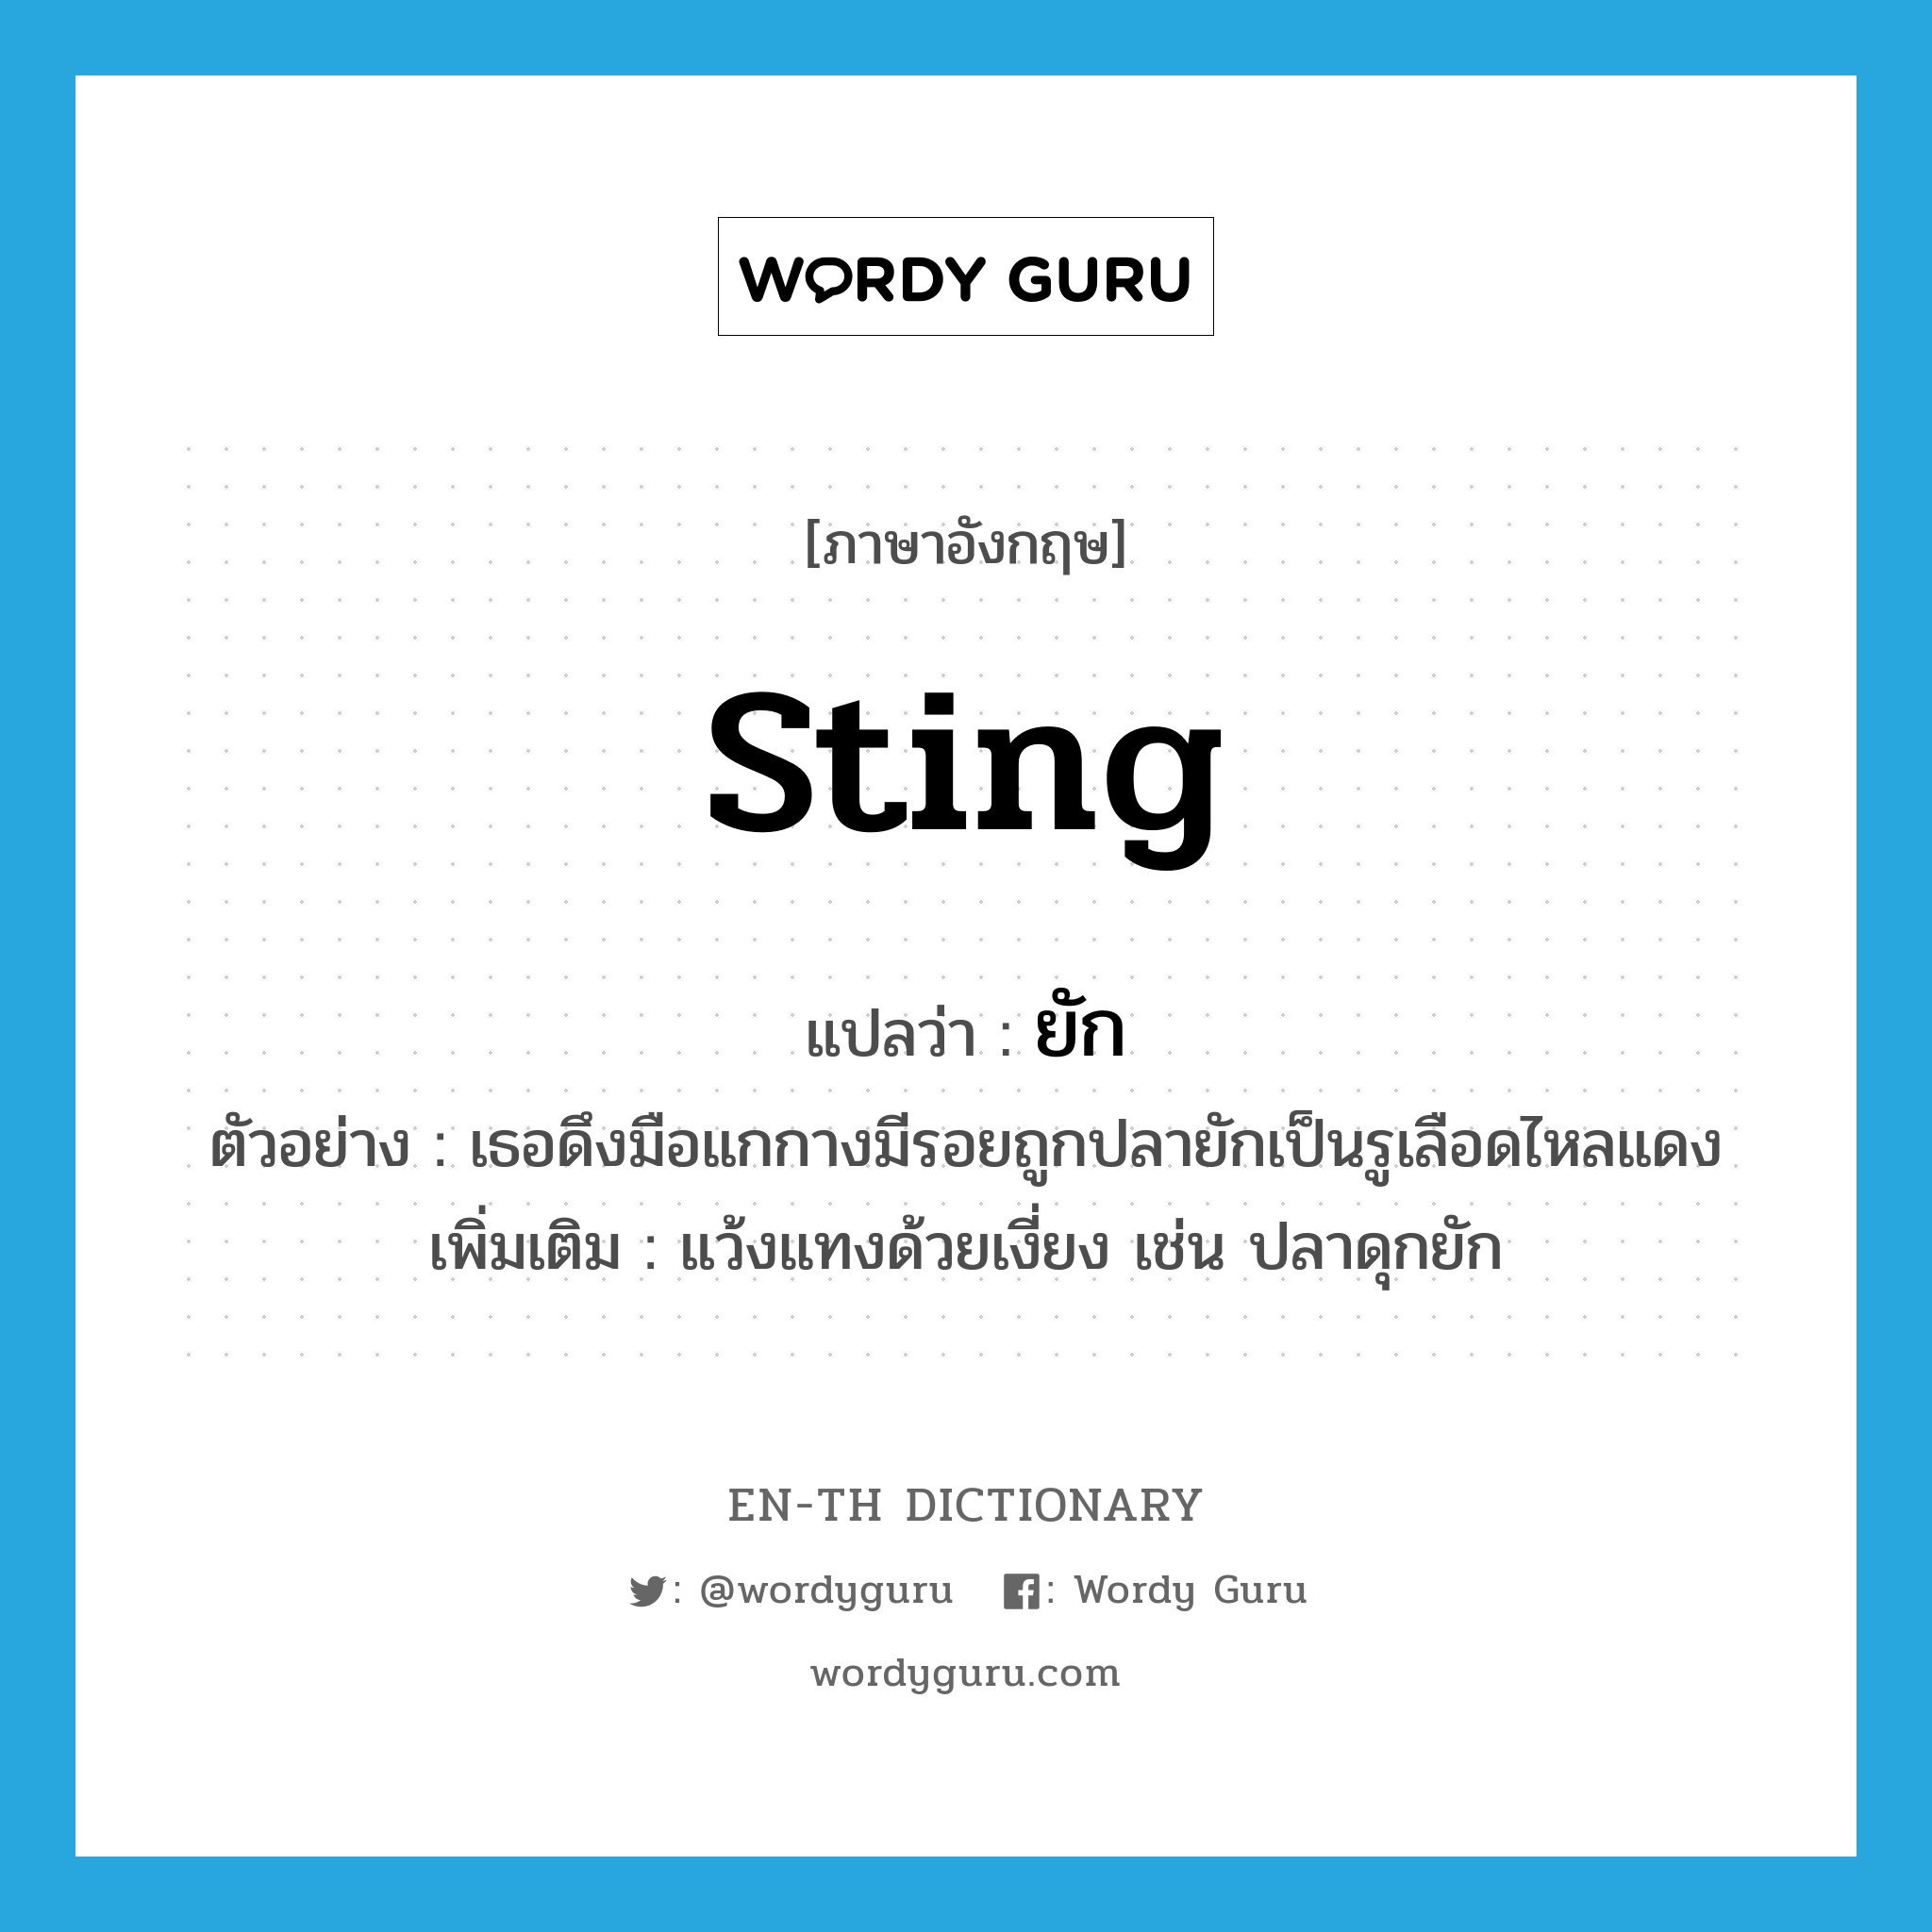 sting แปลว่า?, คำศัพท์ภาษาอังกฤษ sting แปลว่า ยัก ประเภท V ตัวอย่าง เธอดึงมือแกกางมีรอยถูกปลายักเป็นรูเลือดไหลแดง เพิ่มเติม แว้งแทงด้วยเงี่ยง เช่น ปลาดุกยัก หมวด V